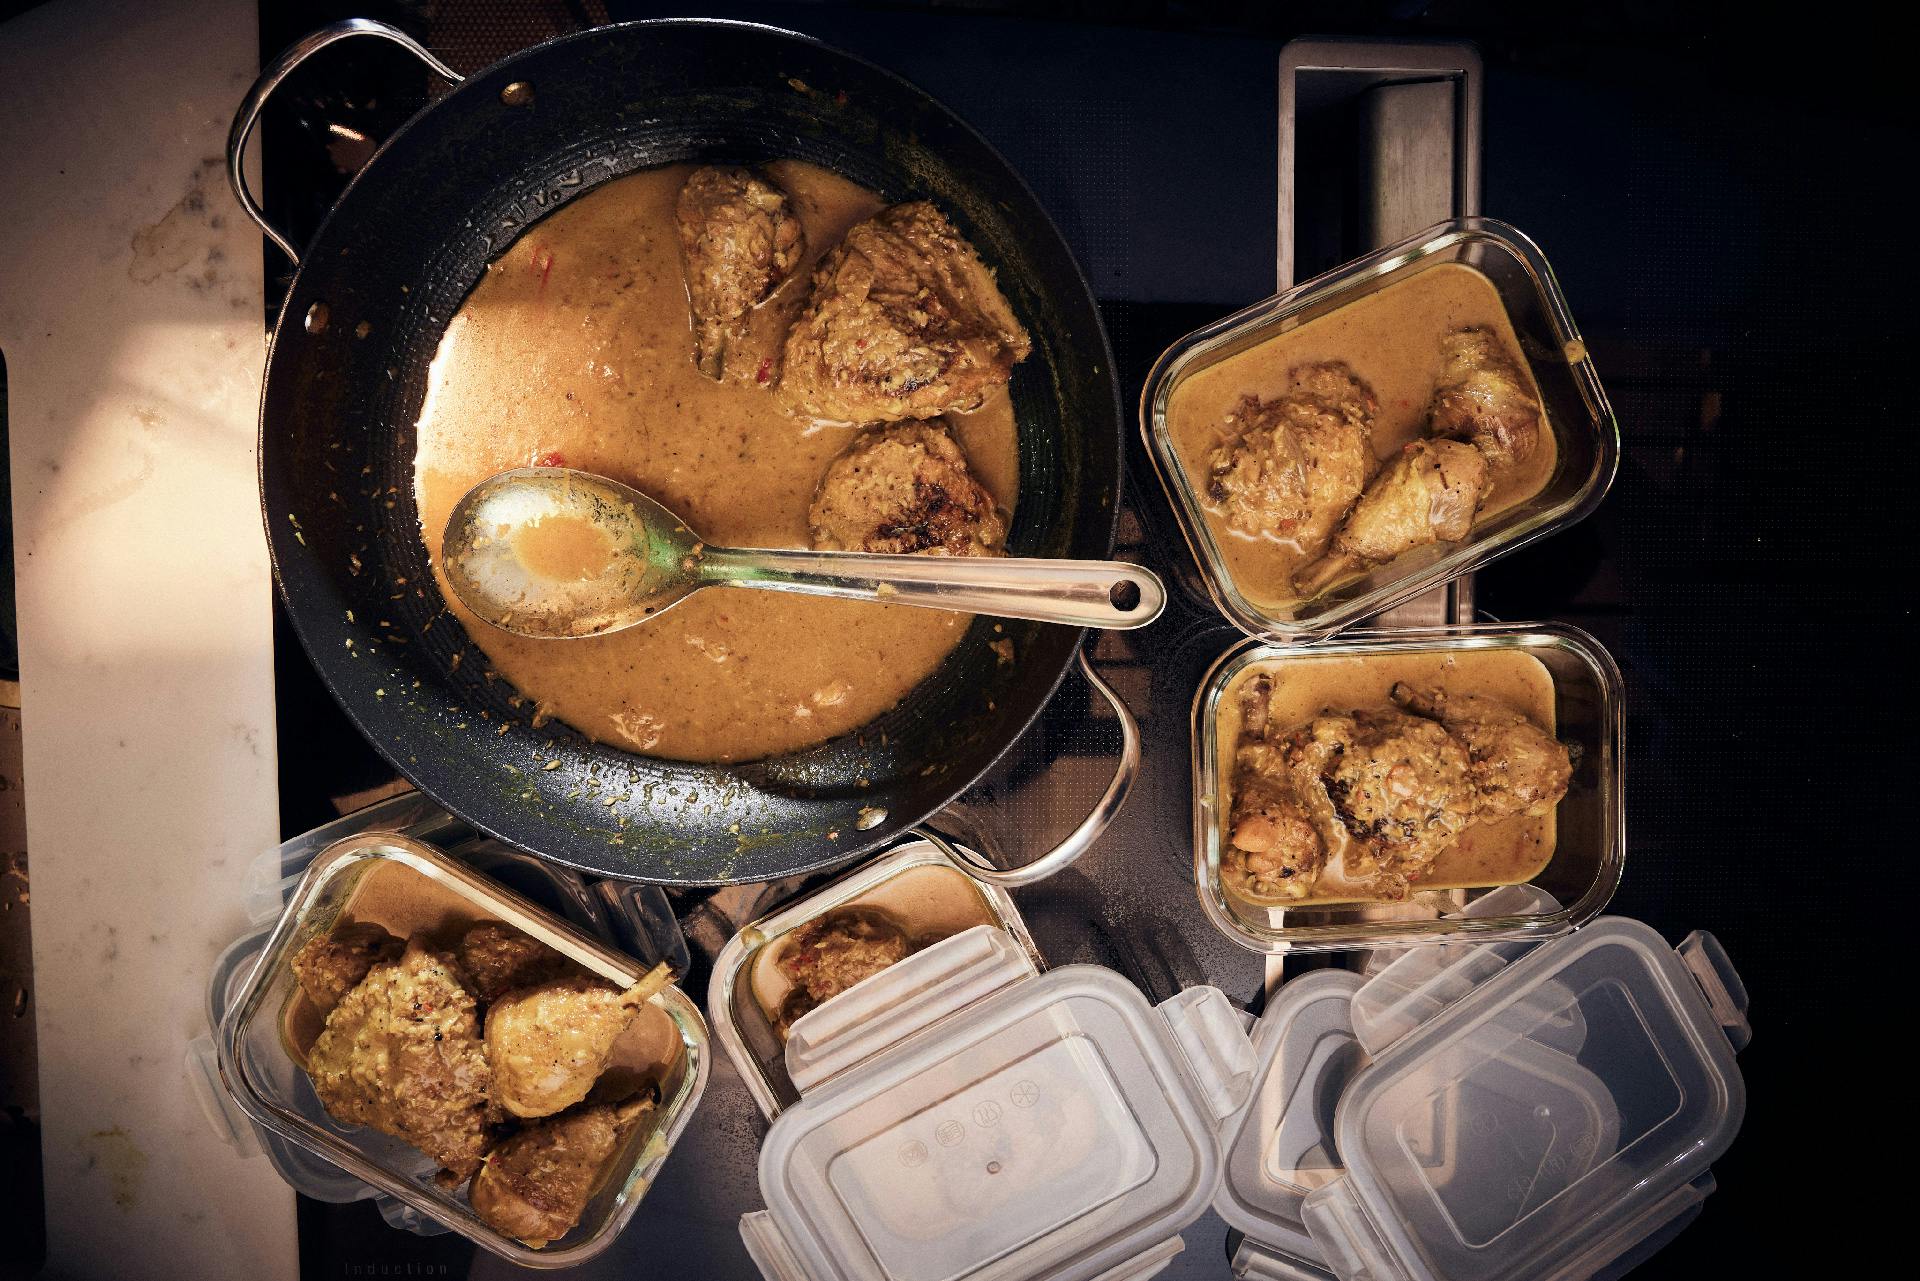 Rendang på kycklinglår (indonesisk curry) - DinVinguide